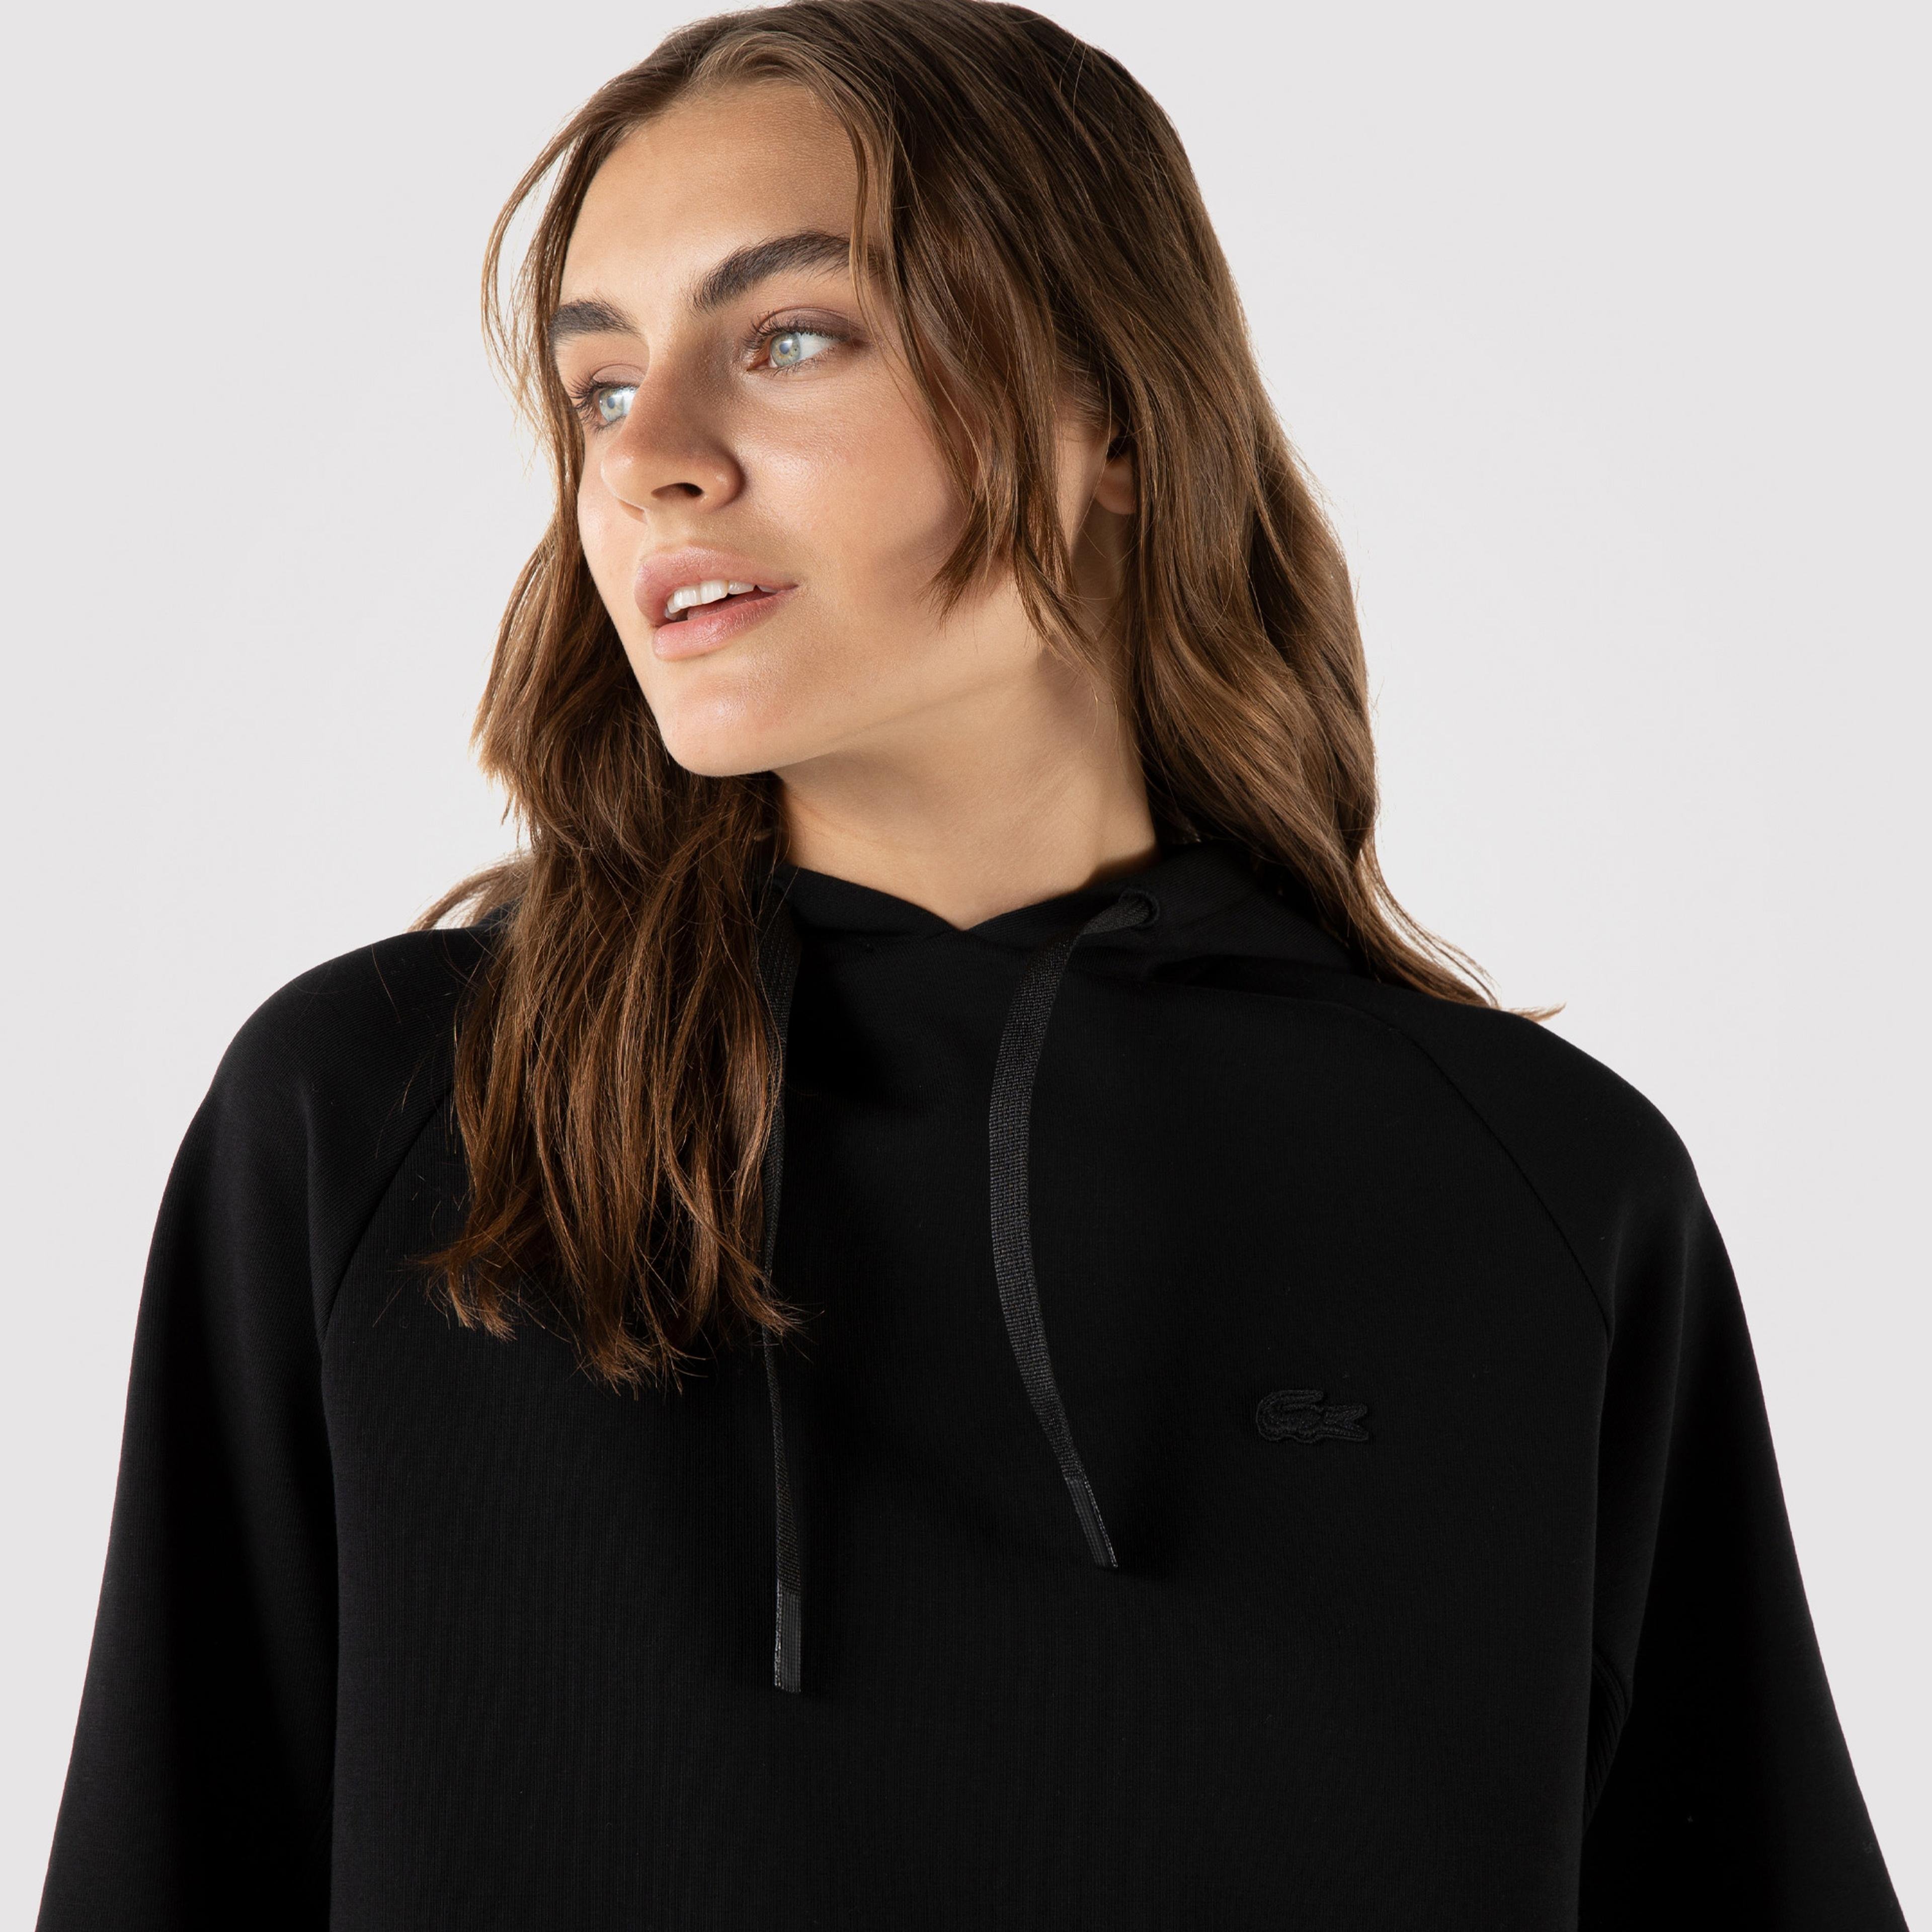 Lacoste Kadın Relaxed Fit Kapüşonlu Baskılı Siyah Sweatshirt